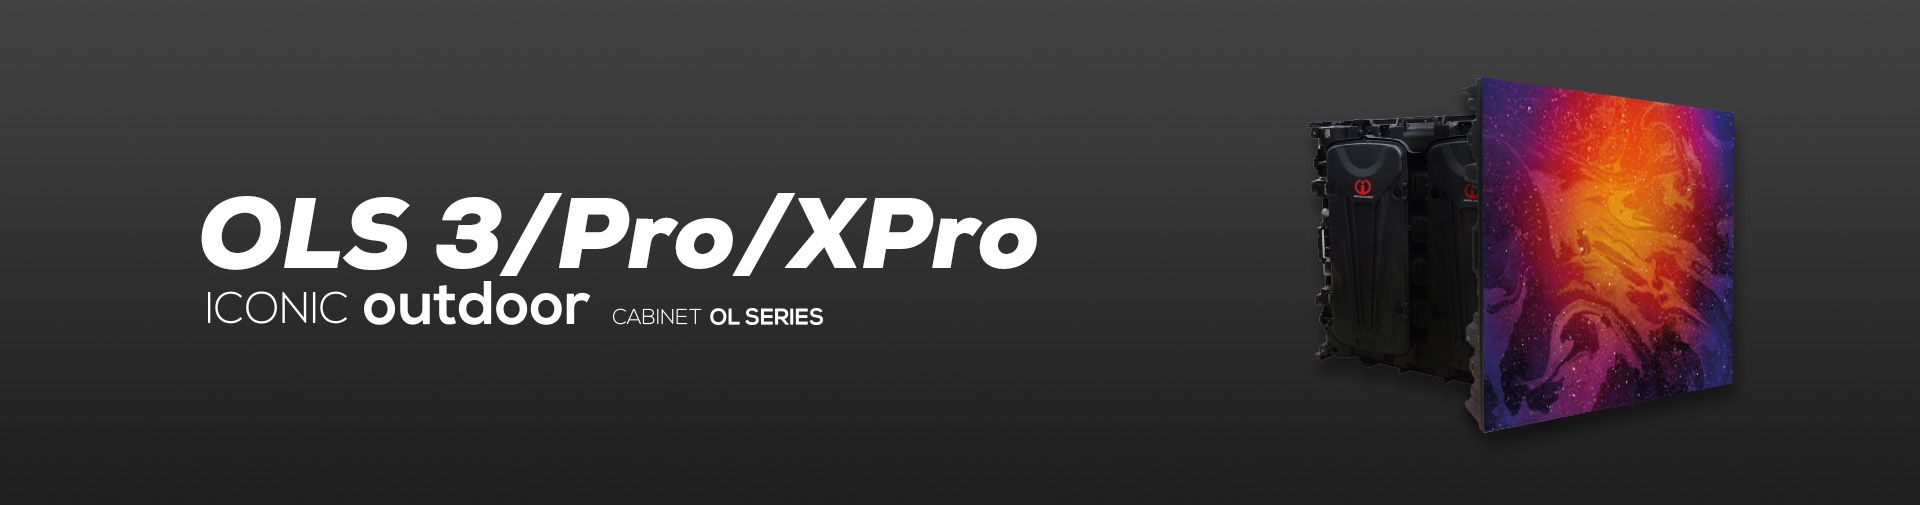 banner-ols-3-pro-xpro-aluminum